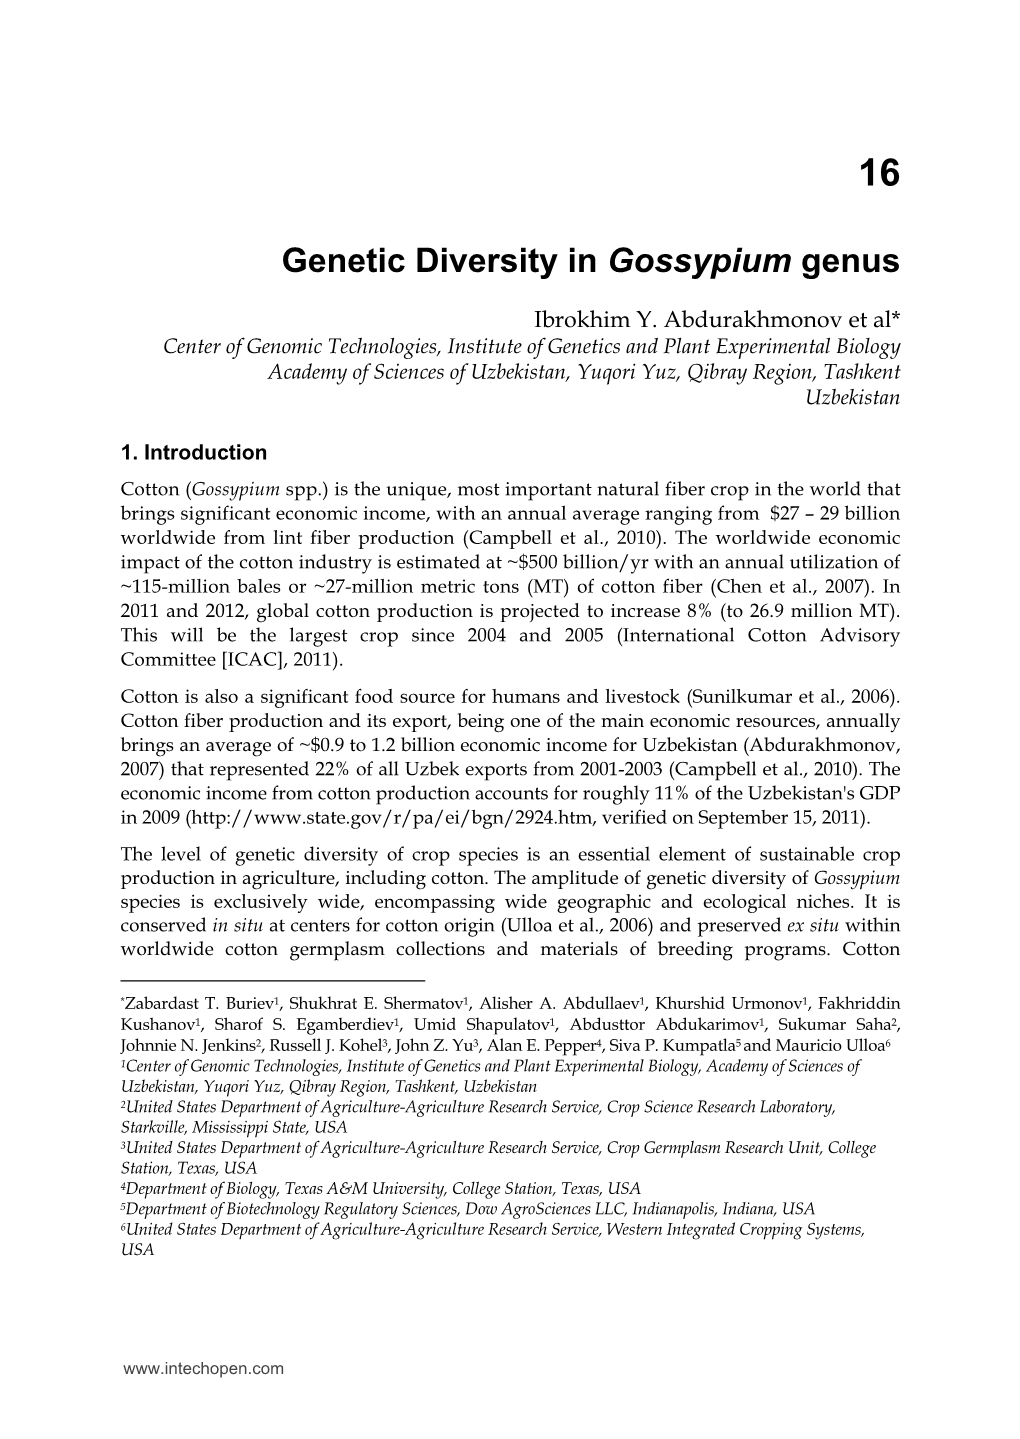 Genetic Diversity in Gossypium Genus